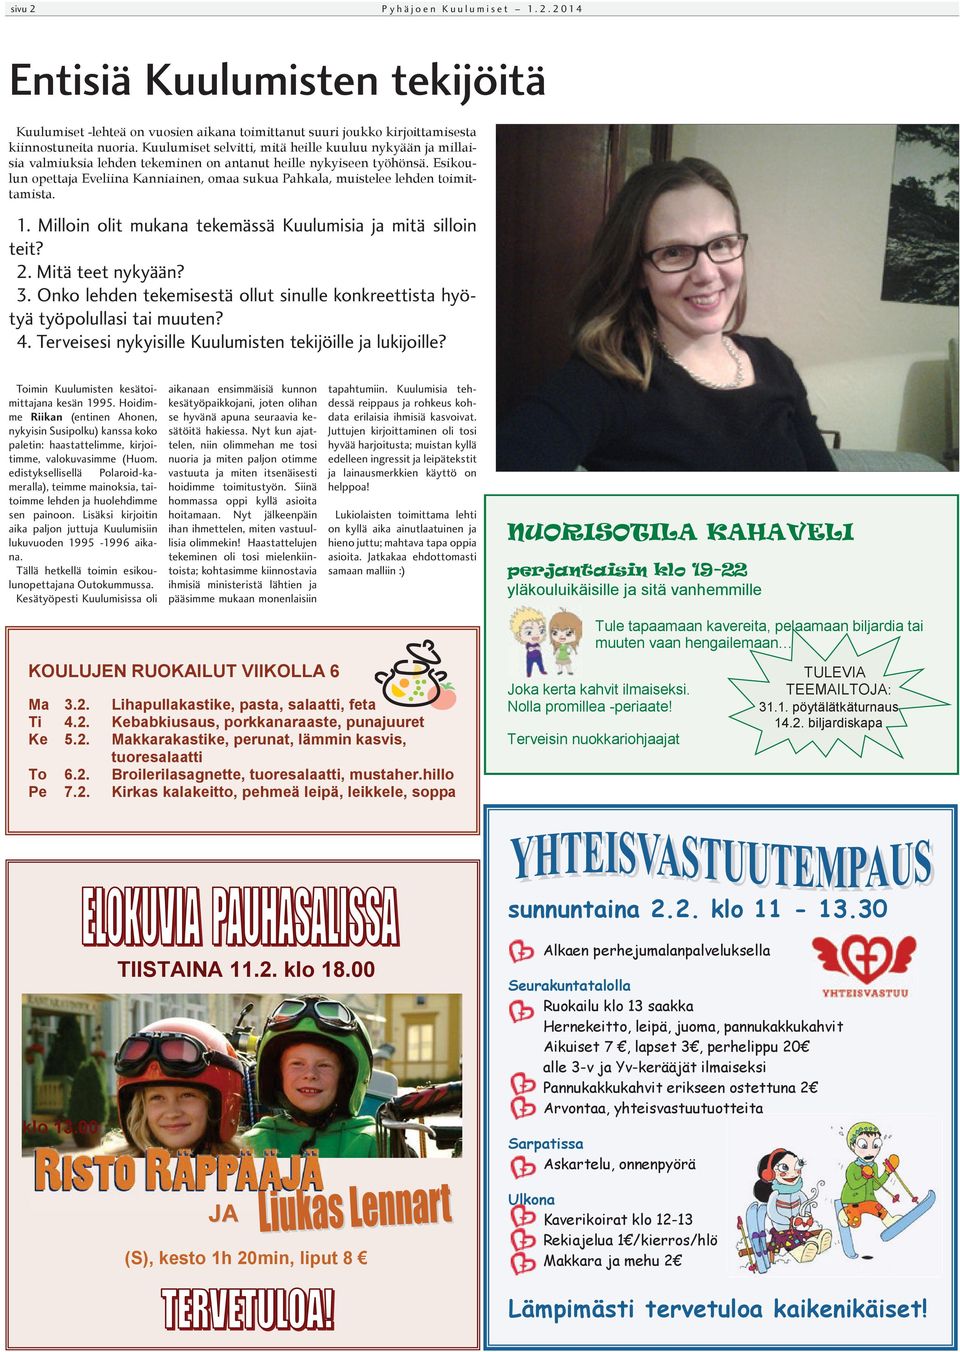 Esikoulun opettaja Eveliina Kanniainen, omaa sukua Pahkala, muistelee lehden toimittamista. 1. Milloin olit mukana tekemässä Kuulumisia ja mitä silloin teit? 2. Mitä teet nykyään? 3.